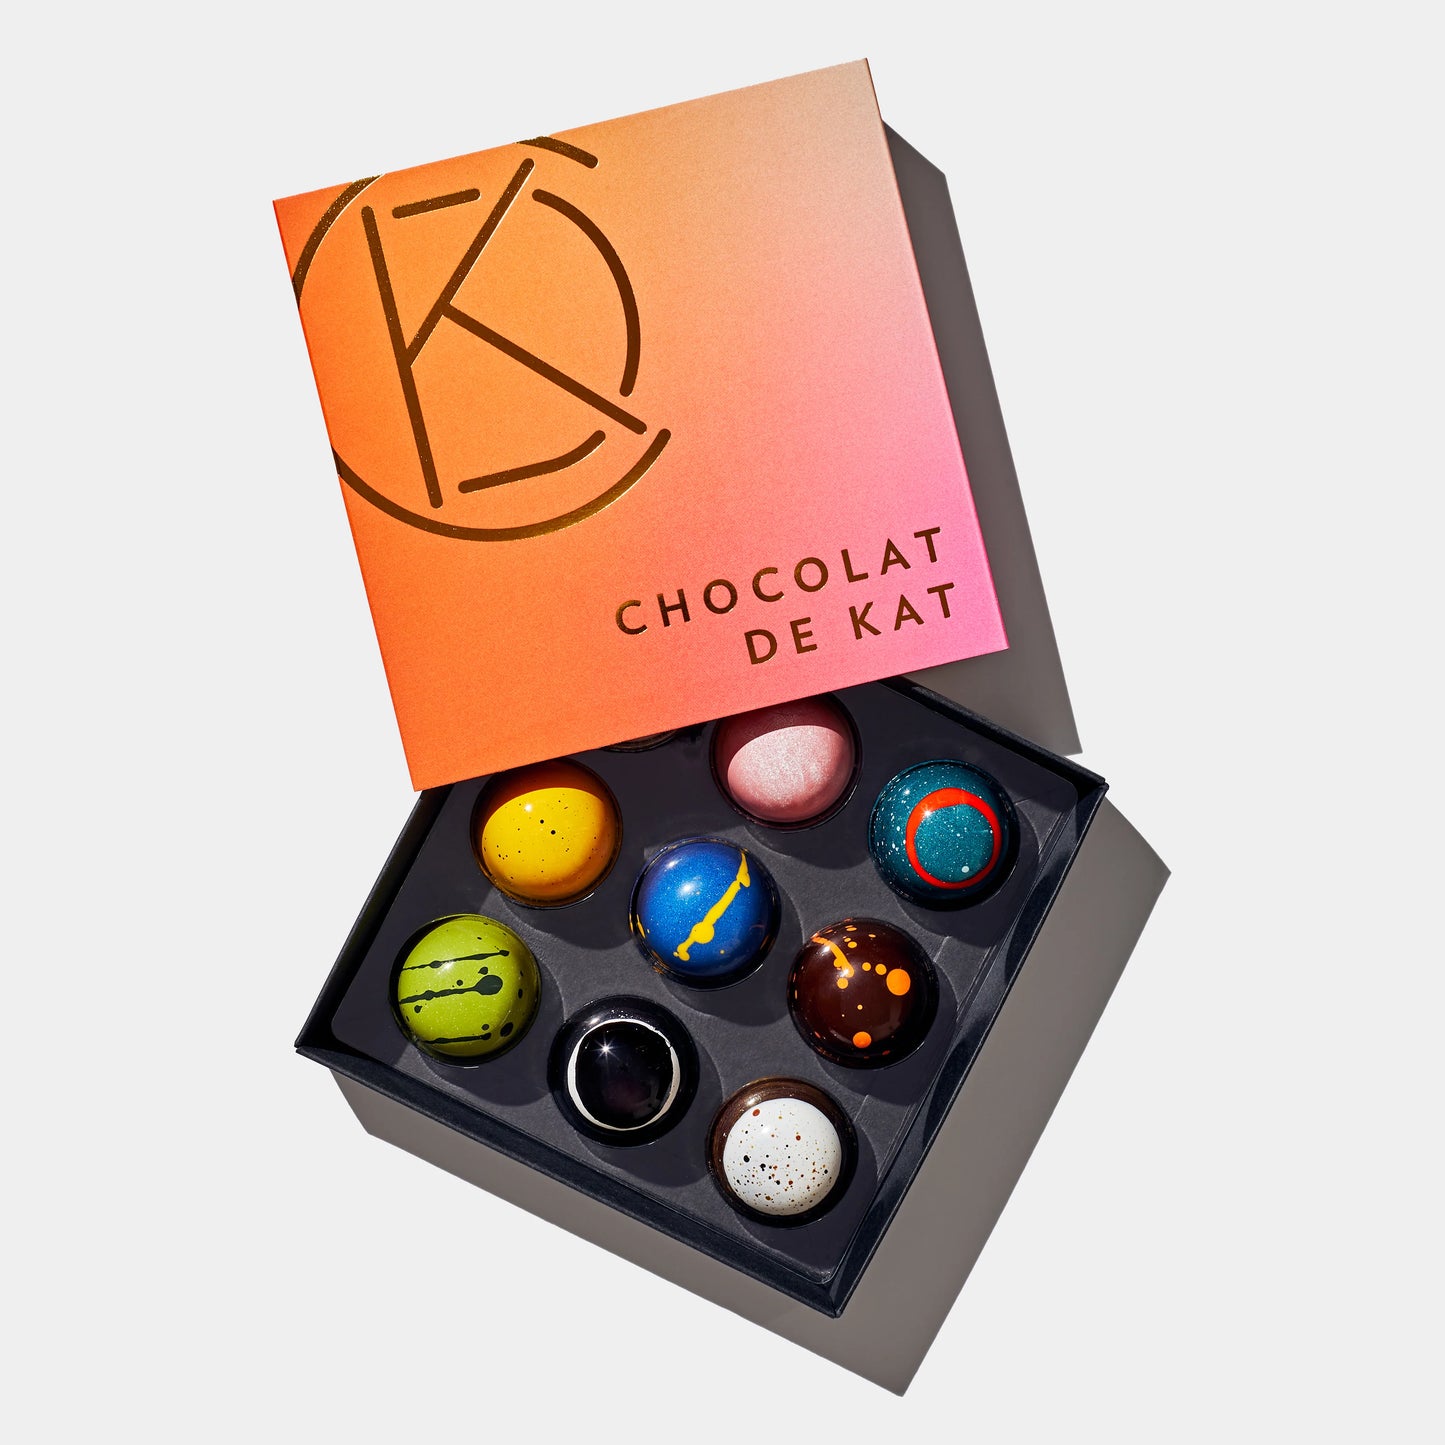 9-Piece Artisanal Chocolates by Chocolat de Kat